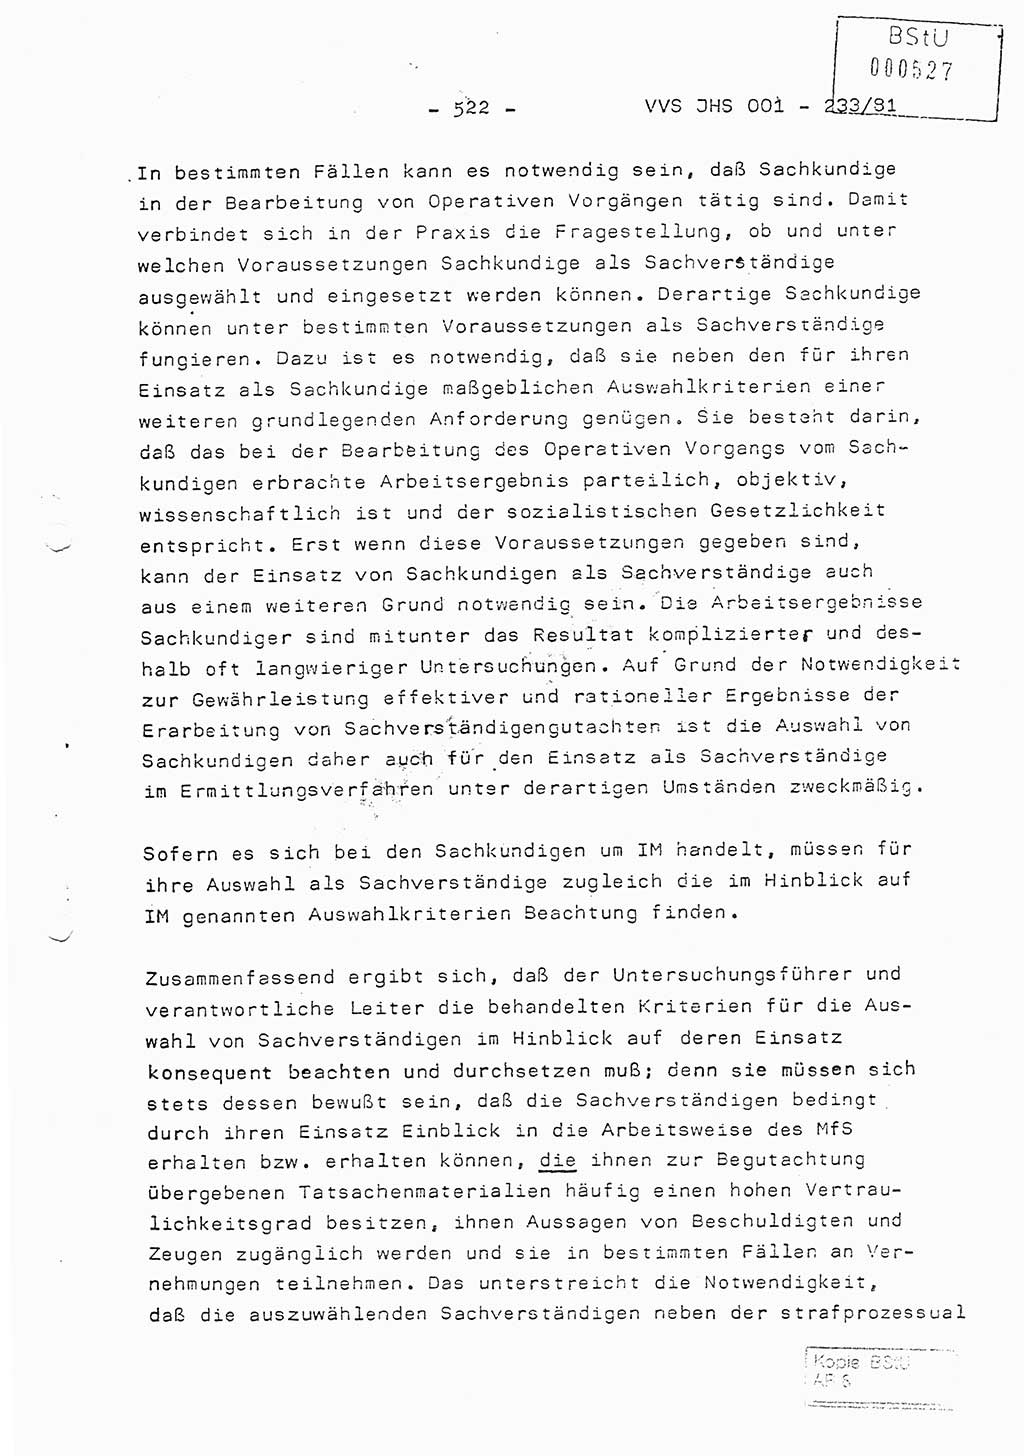 Dissertation Oberstleutnant Horst Zank (JHS), Oberstleutnant Dr. Karl-Heinz Knoblauch (JHS), Oberstleutnant Gustav-Adolf Kowalewski (HA Ⅸ), Oberstleutnant Wolfgang Plötner (HA Ⅸ), Ministerium für Staatssicherheit (MfS) [Deutsche Demokratische Republik (DDR)], Juristische Hochschule (JHS), Vertrauliche Verschlußsache (VVS) o001-233/81, Potsdam 1981, Blatt 522 (Diss. MfS DDR JHS VVS o001-233/81 1981, Bl. 522)